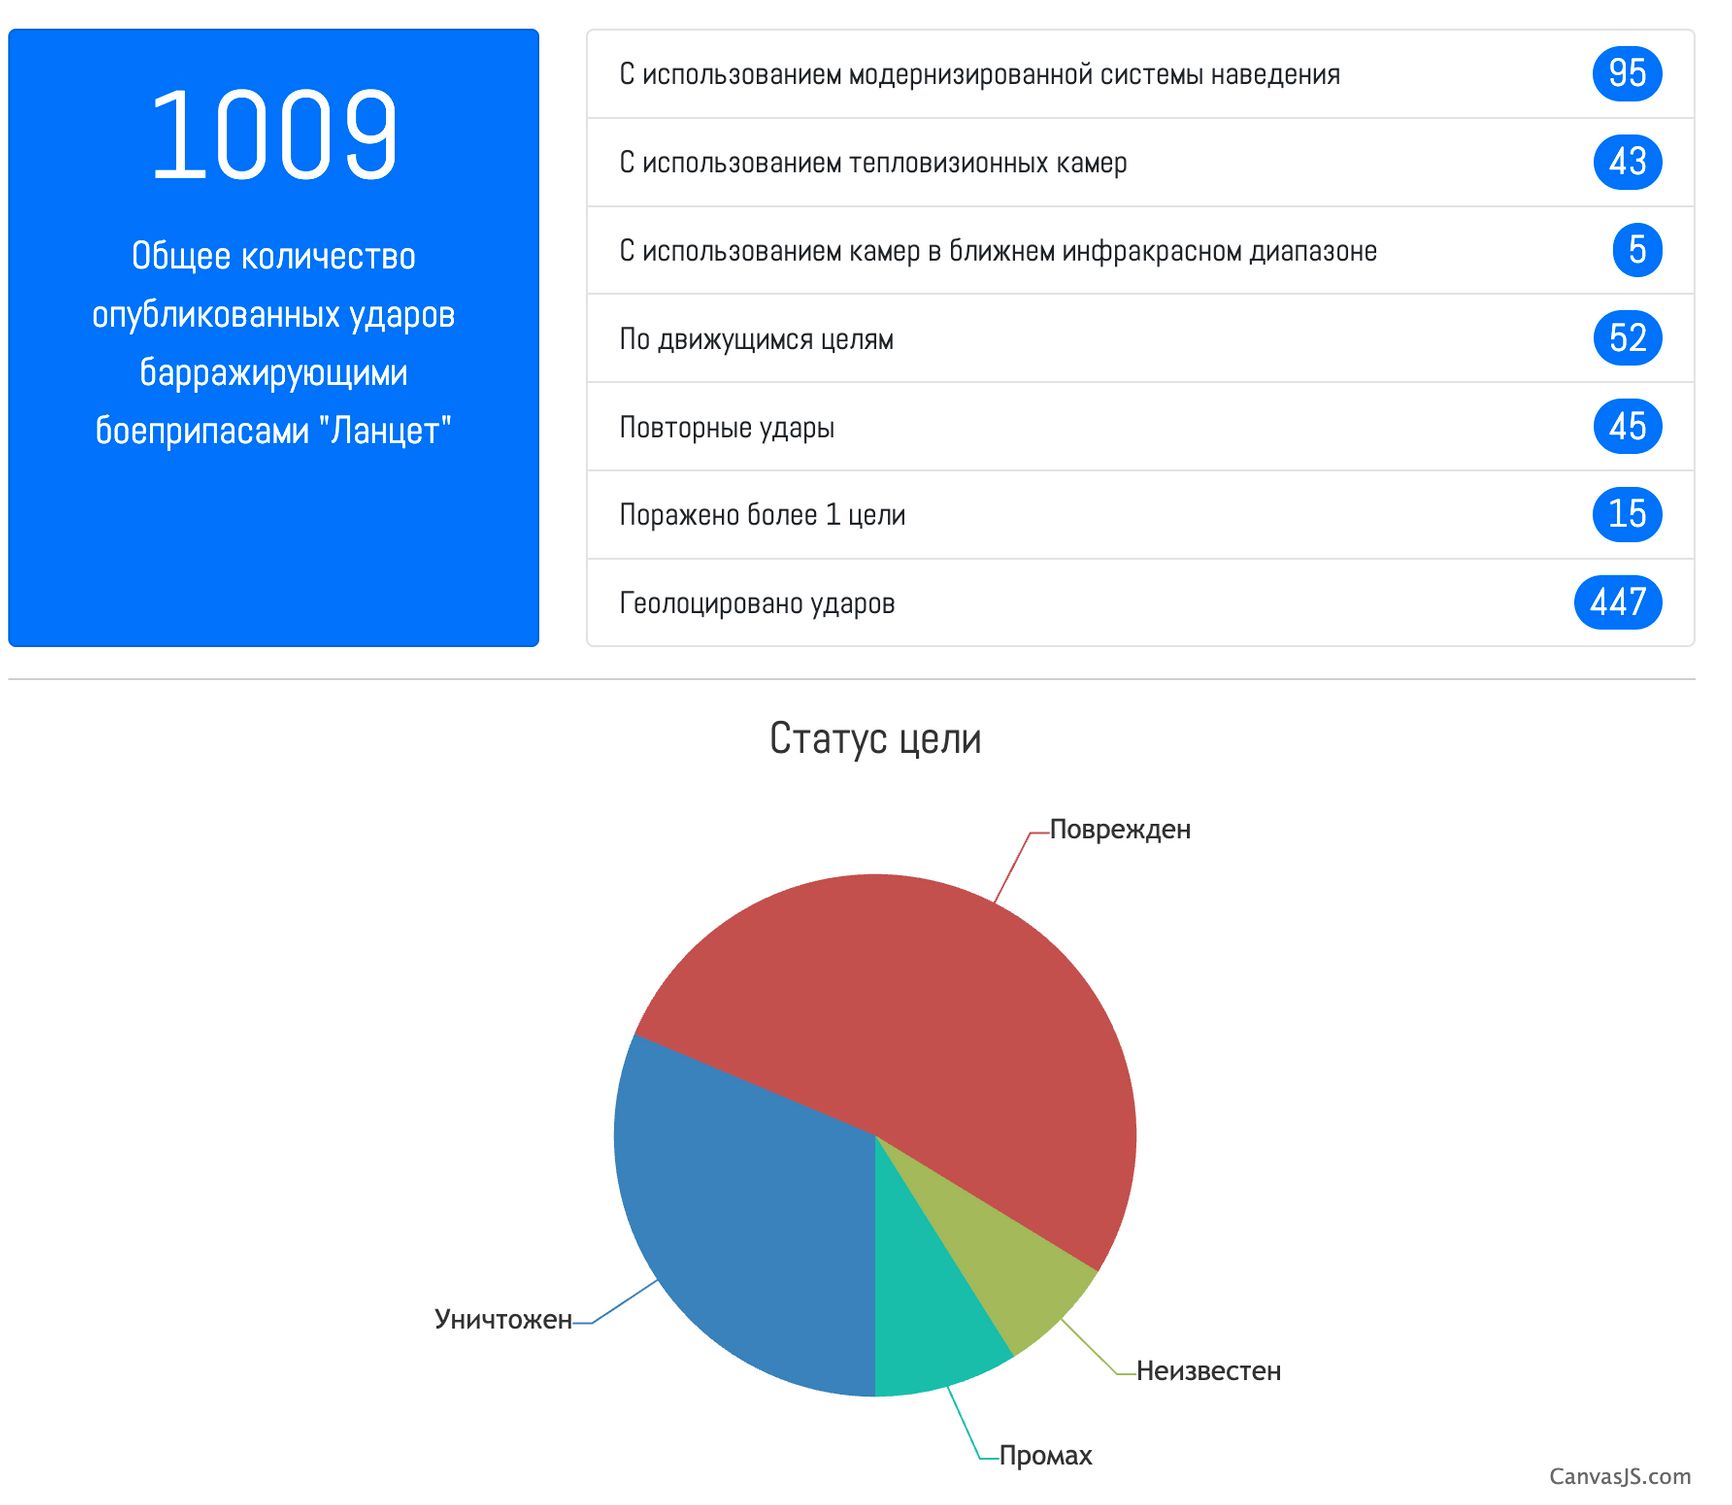 Статистика применения российских барражирующих боеприпасов «Ланцет»